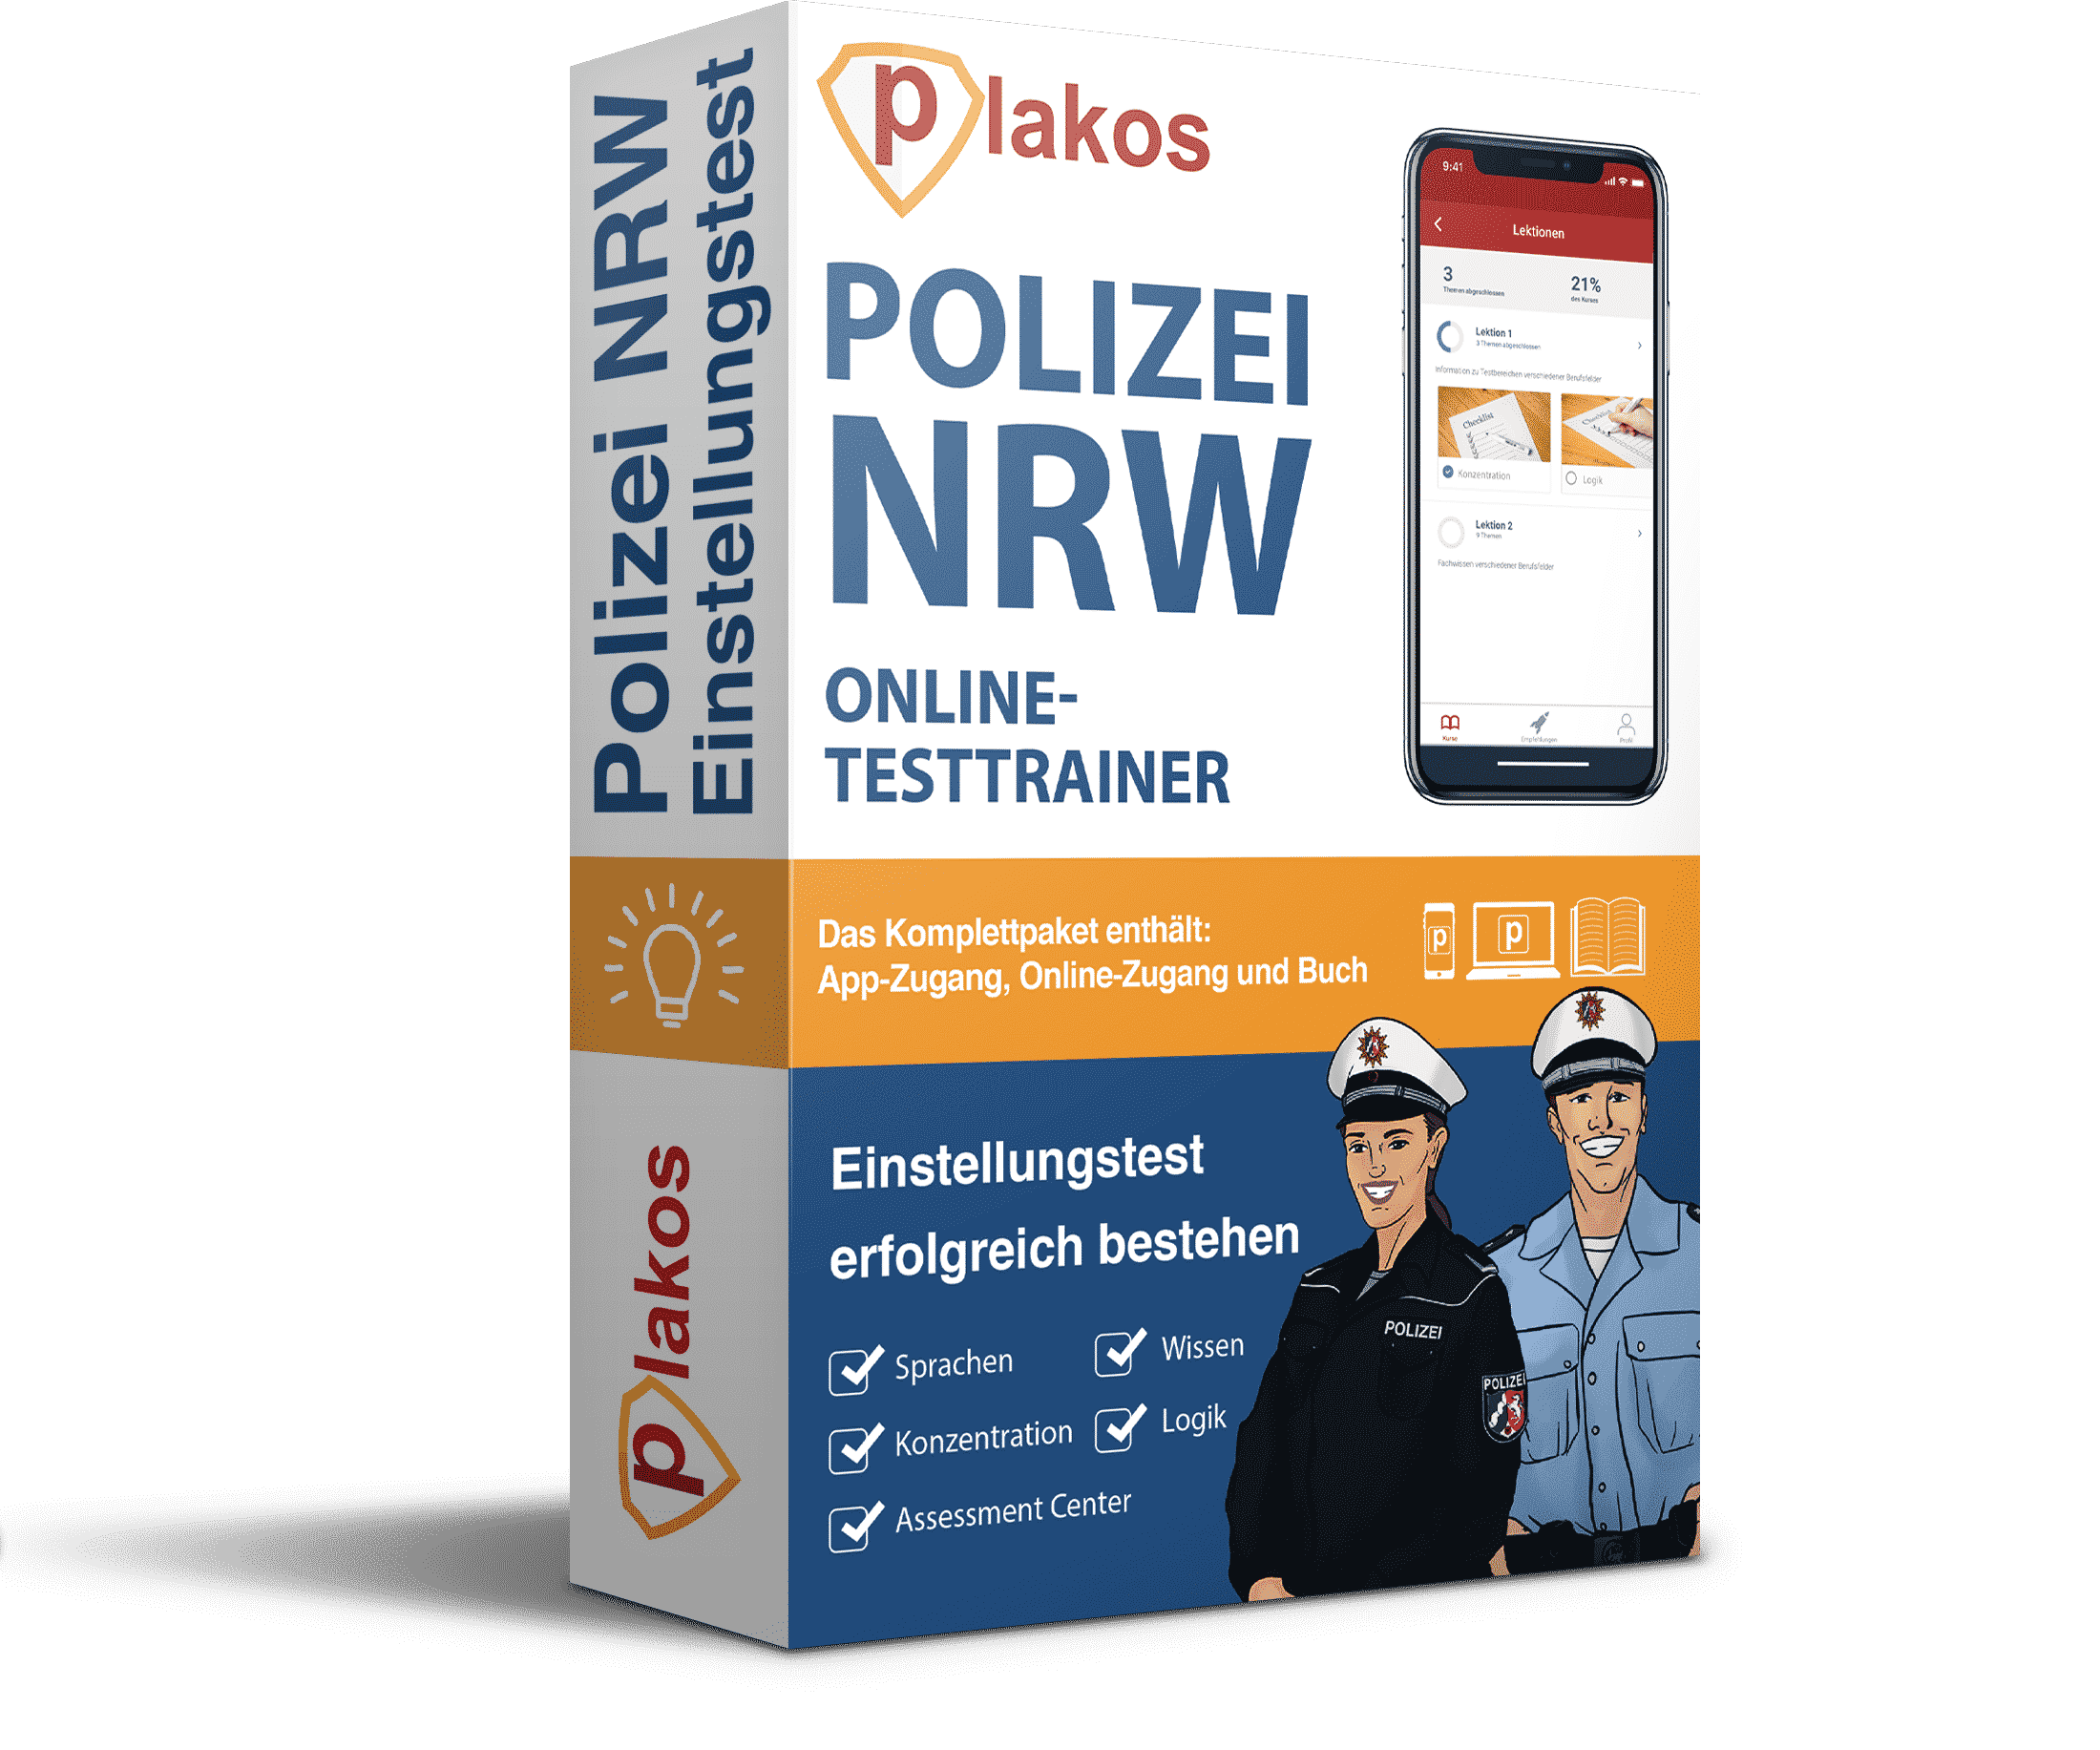 Polizei NRW Einstellungstest bestehen